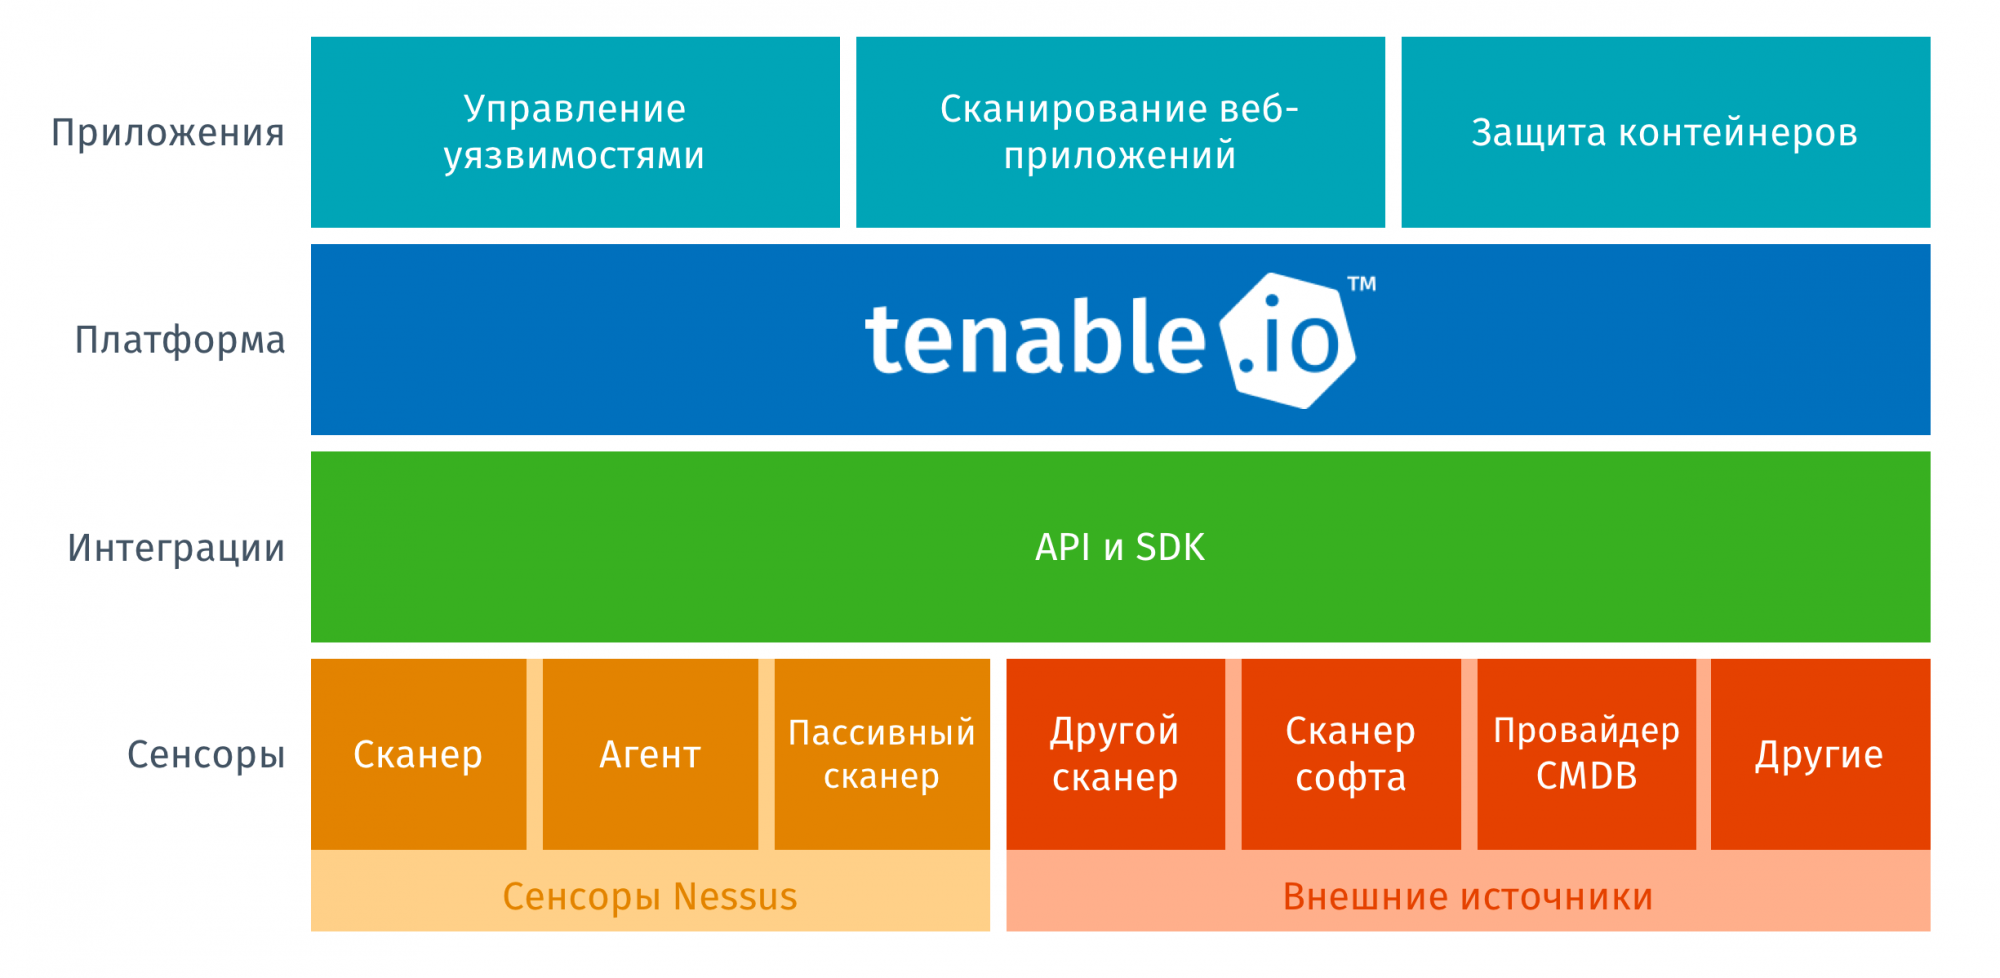 Структура продукта Tenable.io